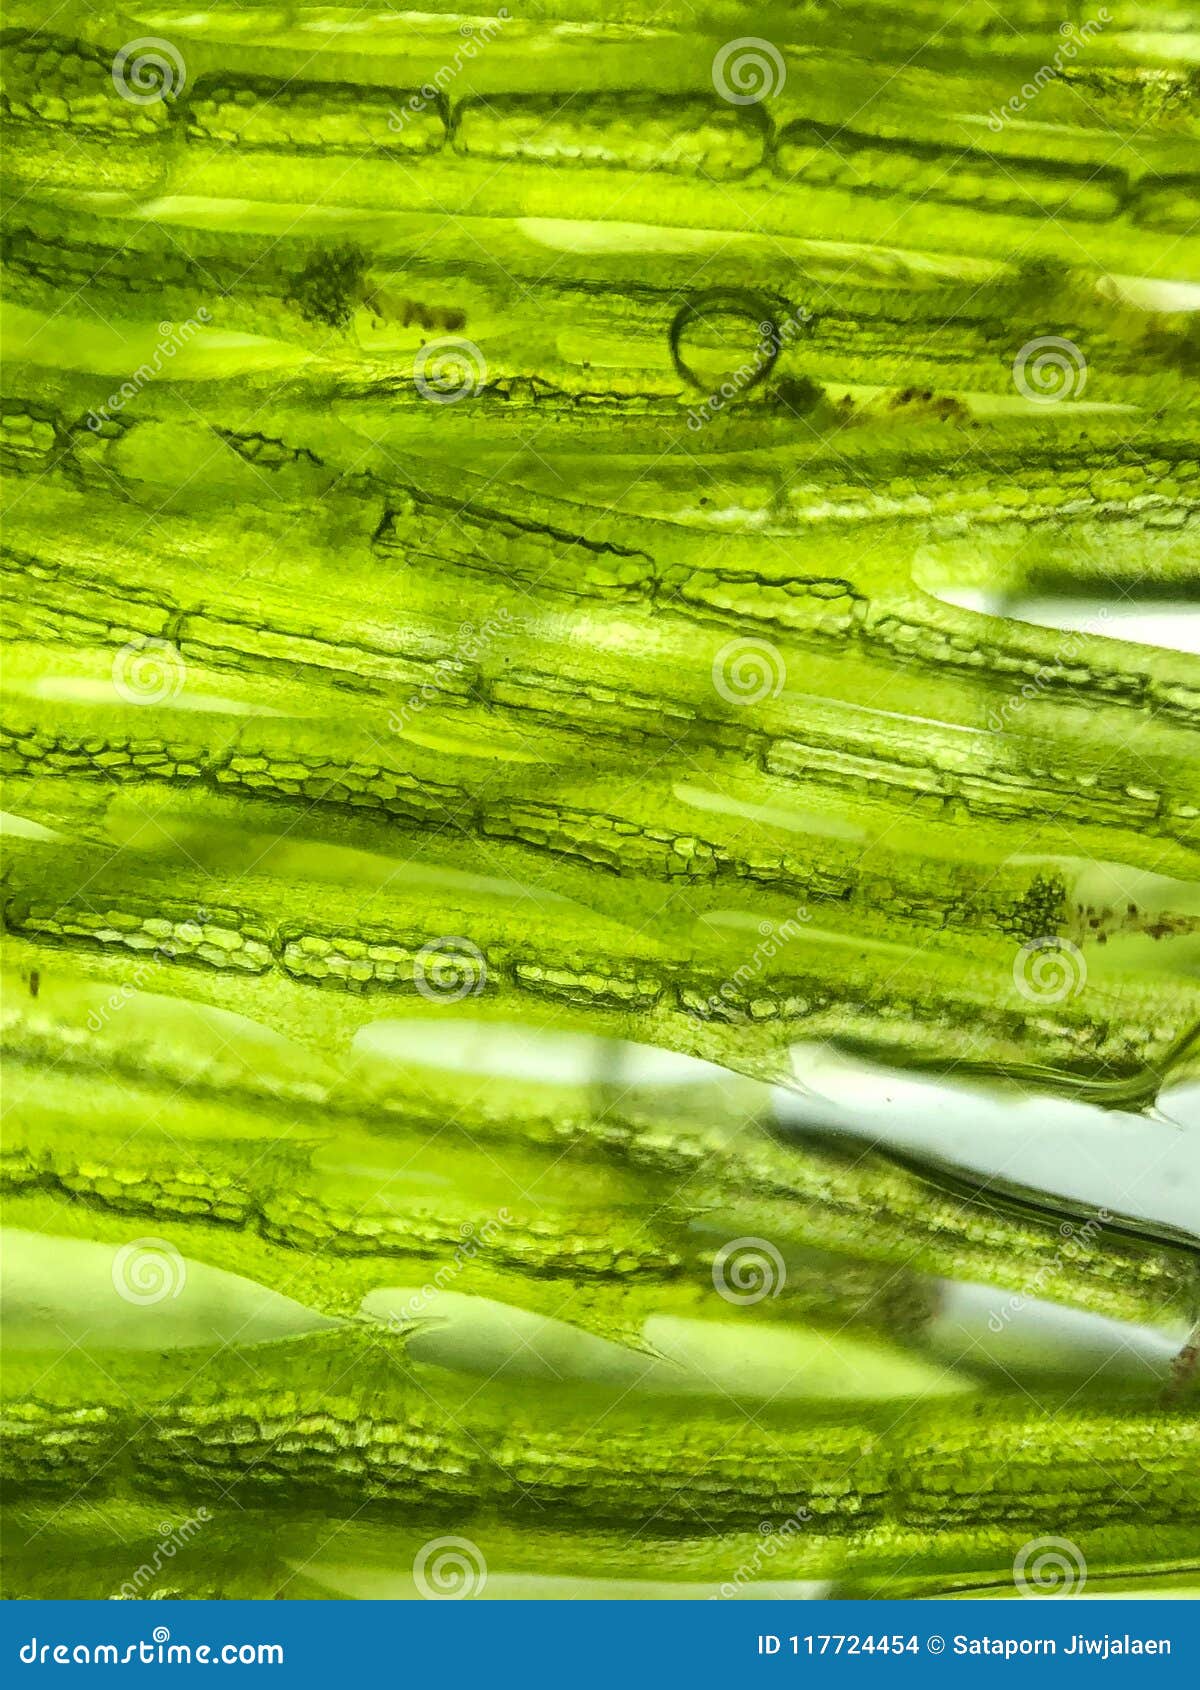 В клетках водорослей содержится. Клетка водоросли ламинарии. Биоткани из водорослей. Клетка водоросли фото. Как выглядит клетка ламинарии.